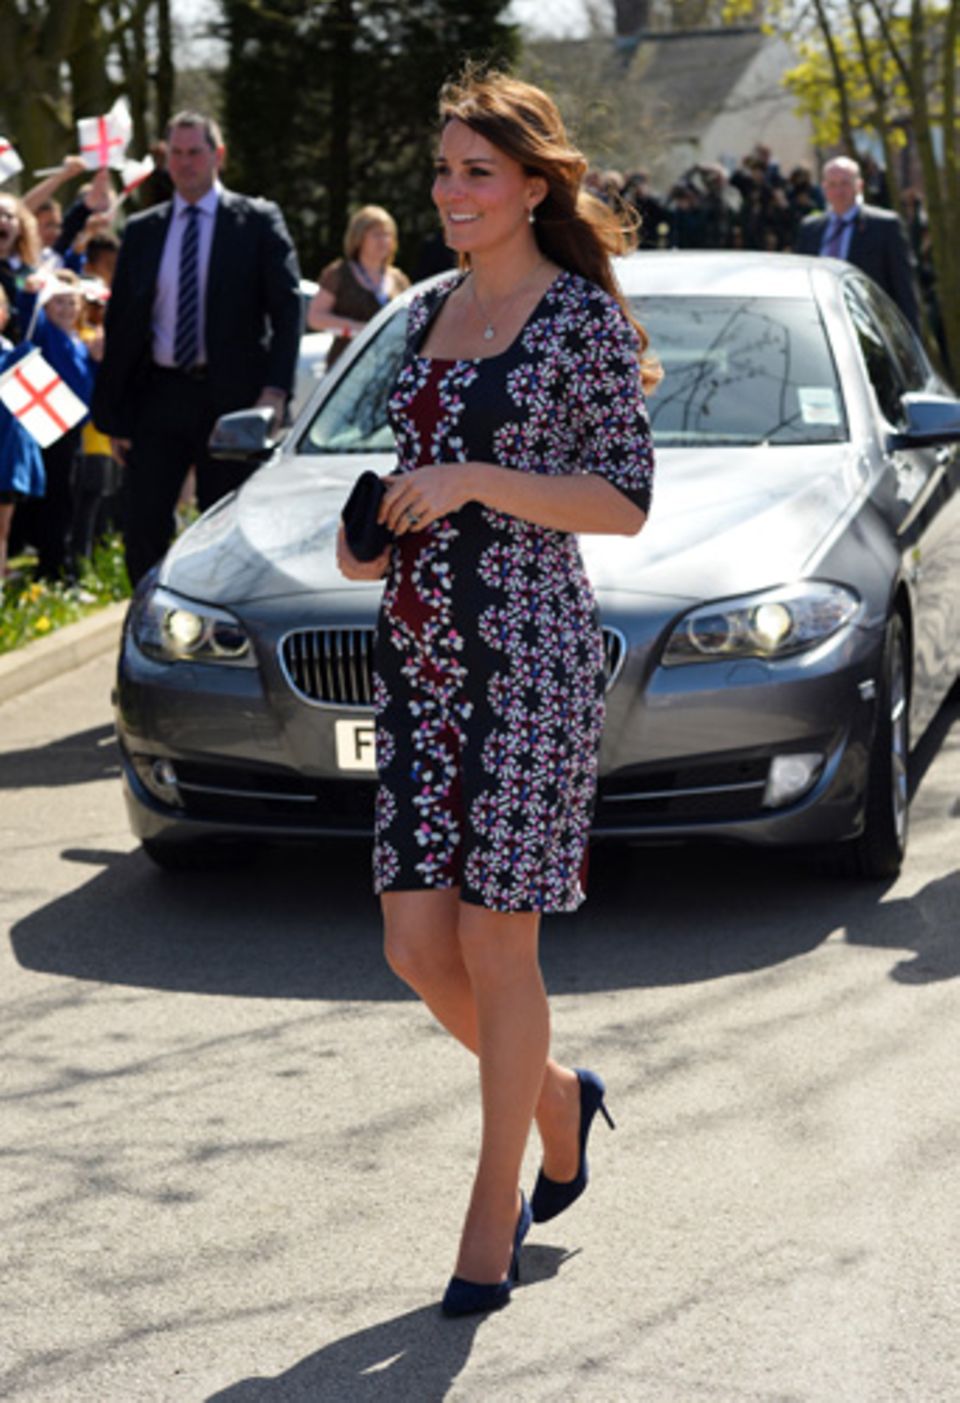 An einem sonnigen Tag in Manchester zeigte sich Kate Middleton in einem Kleid mit grafischem Muster.